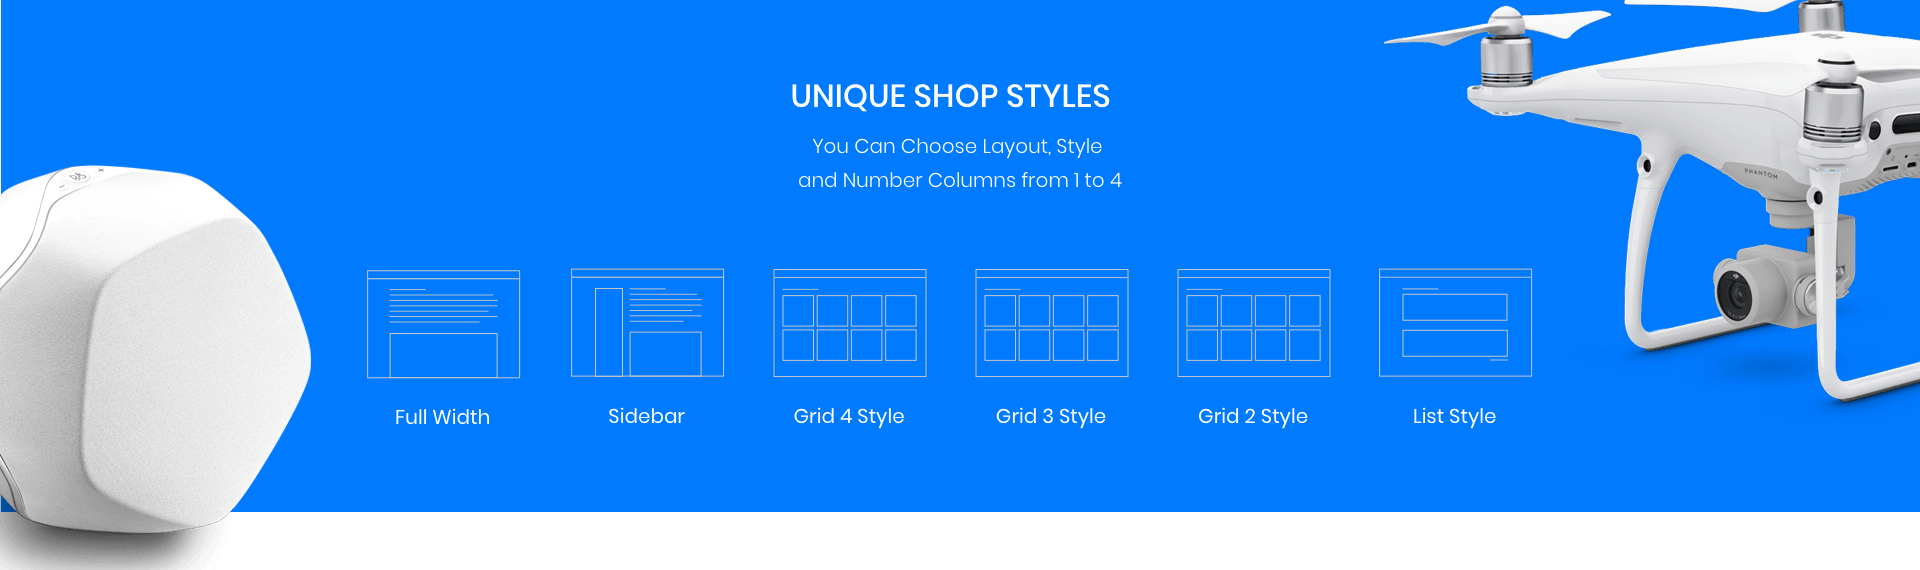 Unique shop styles